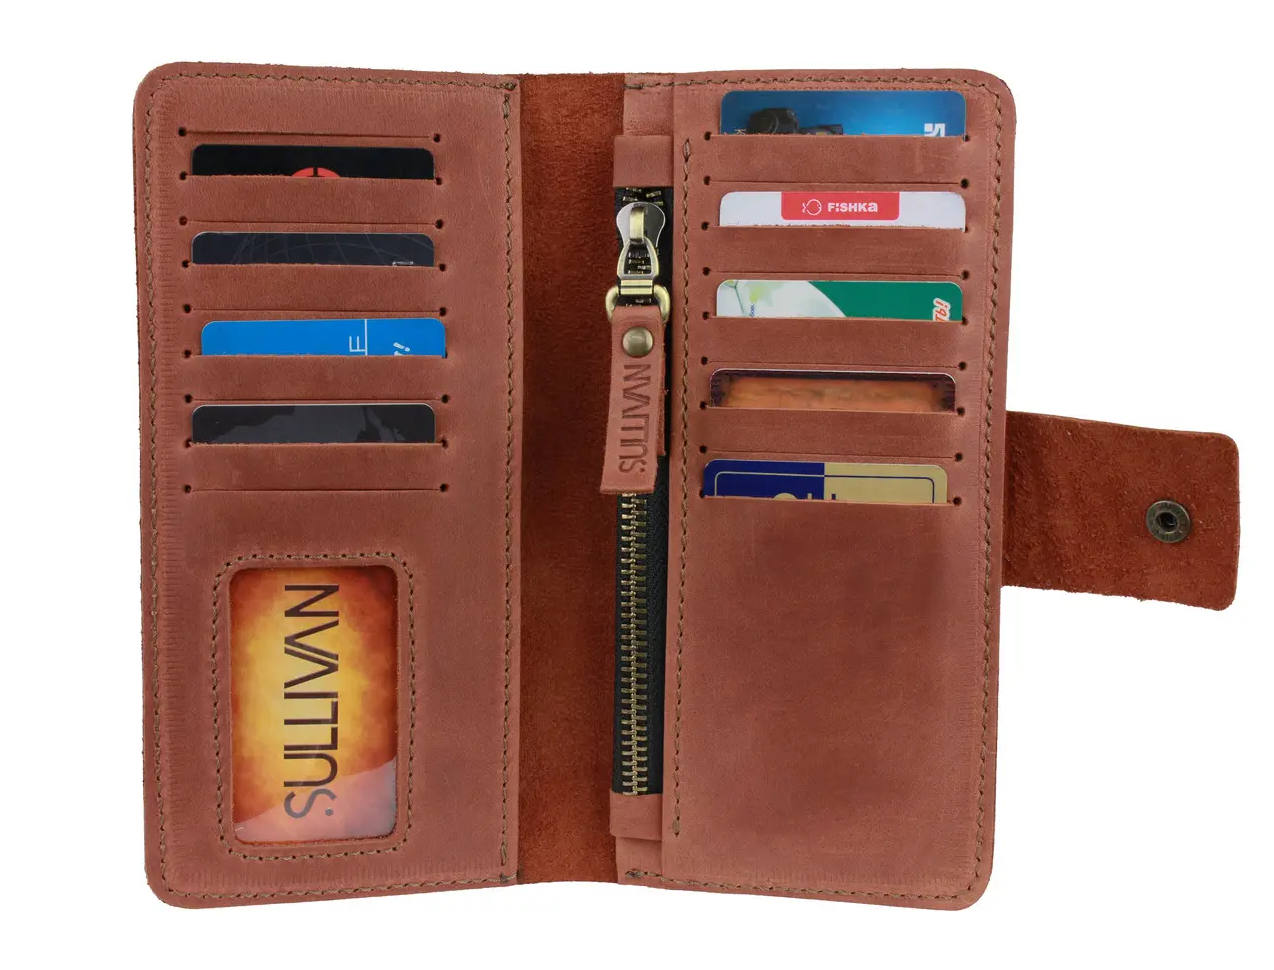 Жіночий шкіряний гаманець клатч купюрник-ленгер із натуральної шкіри світло-коричневий